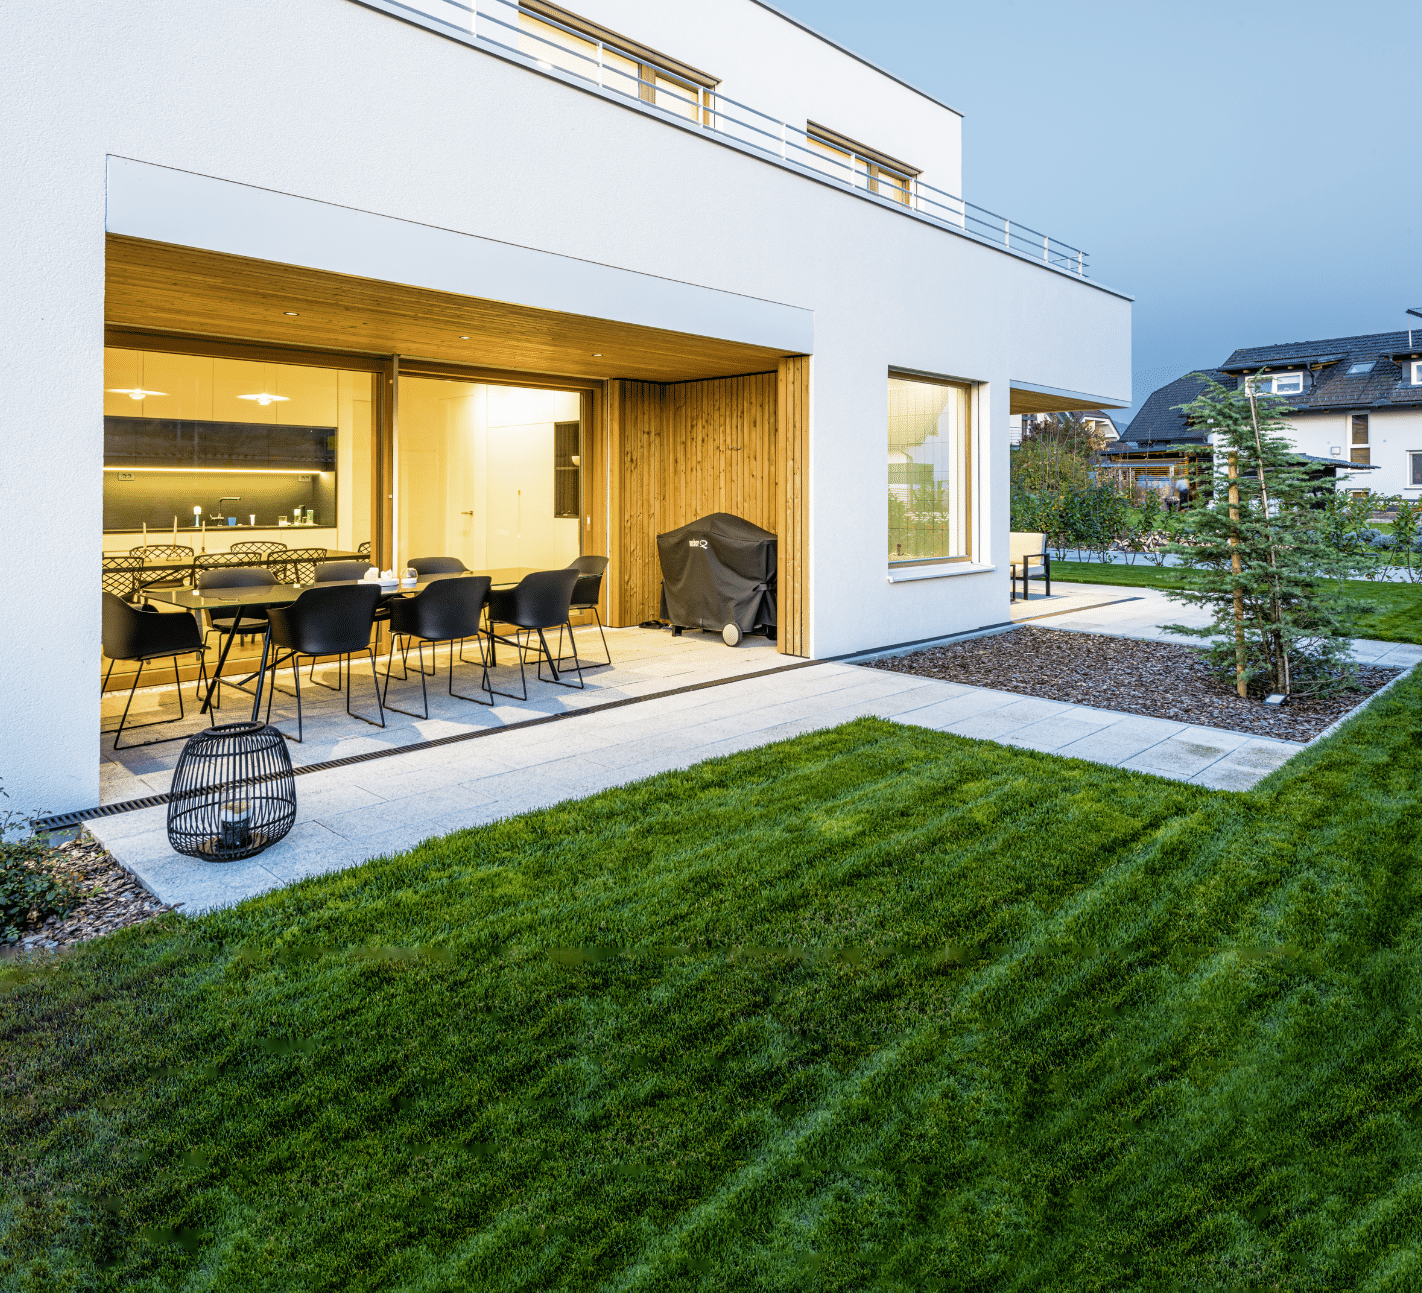 Lumar Haus zeigt ein Wohnhaus mit gepflegtem Garten und praktischer Terrasse.